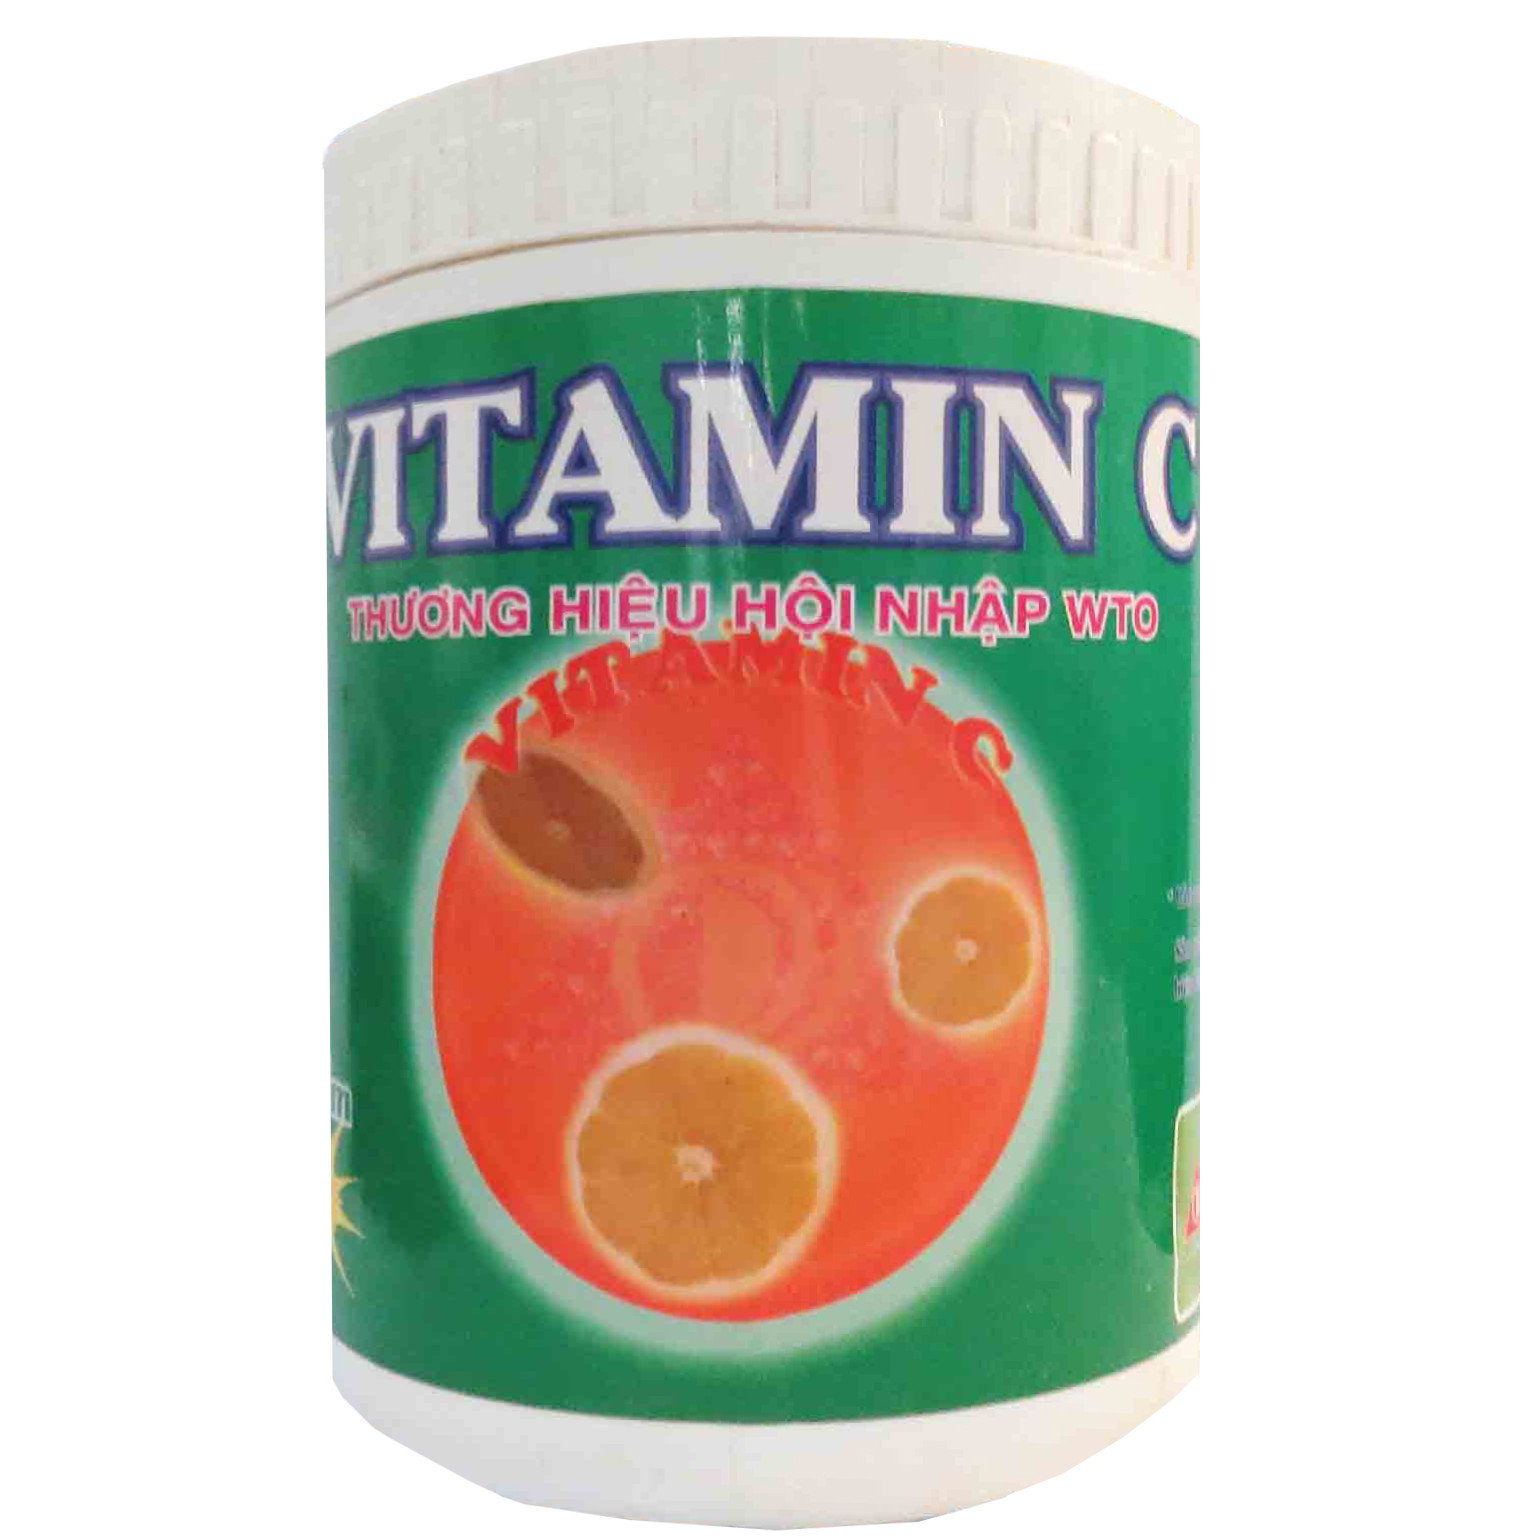 VITAMIN C - Tăng sức đề kháng chống stress cho tôm